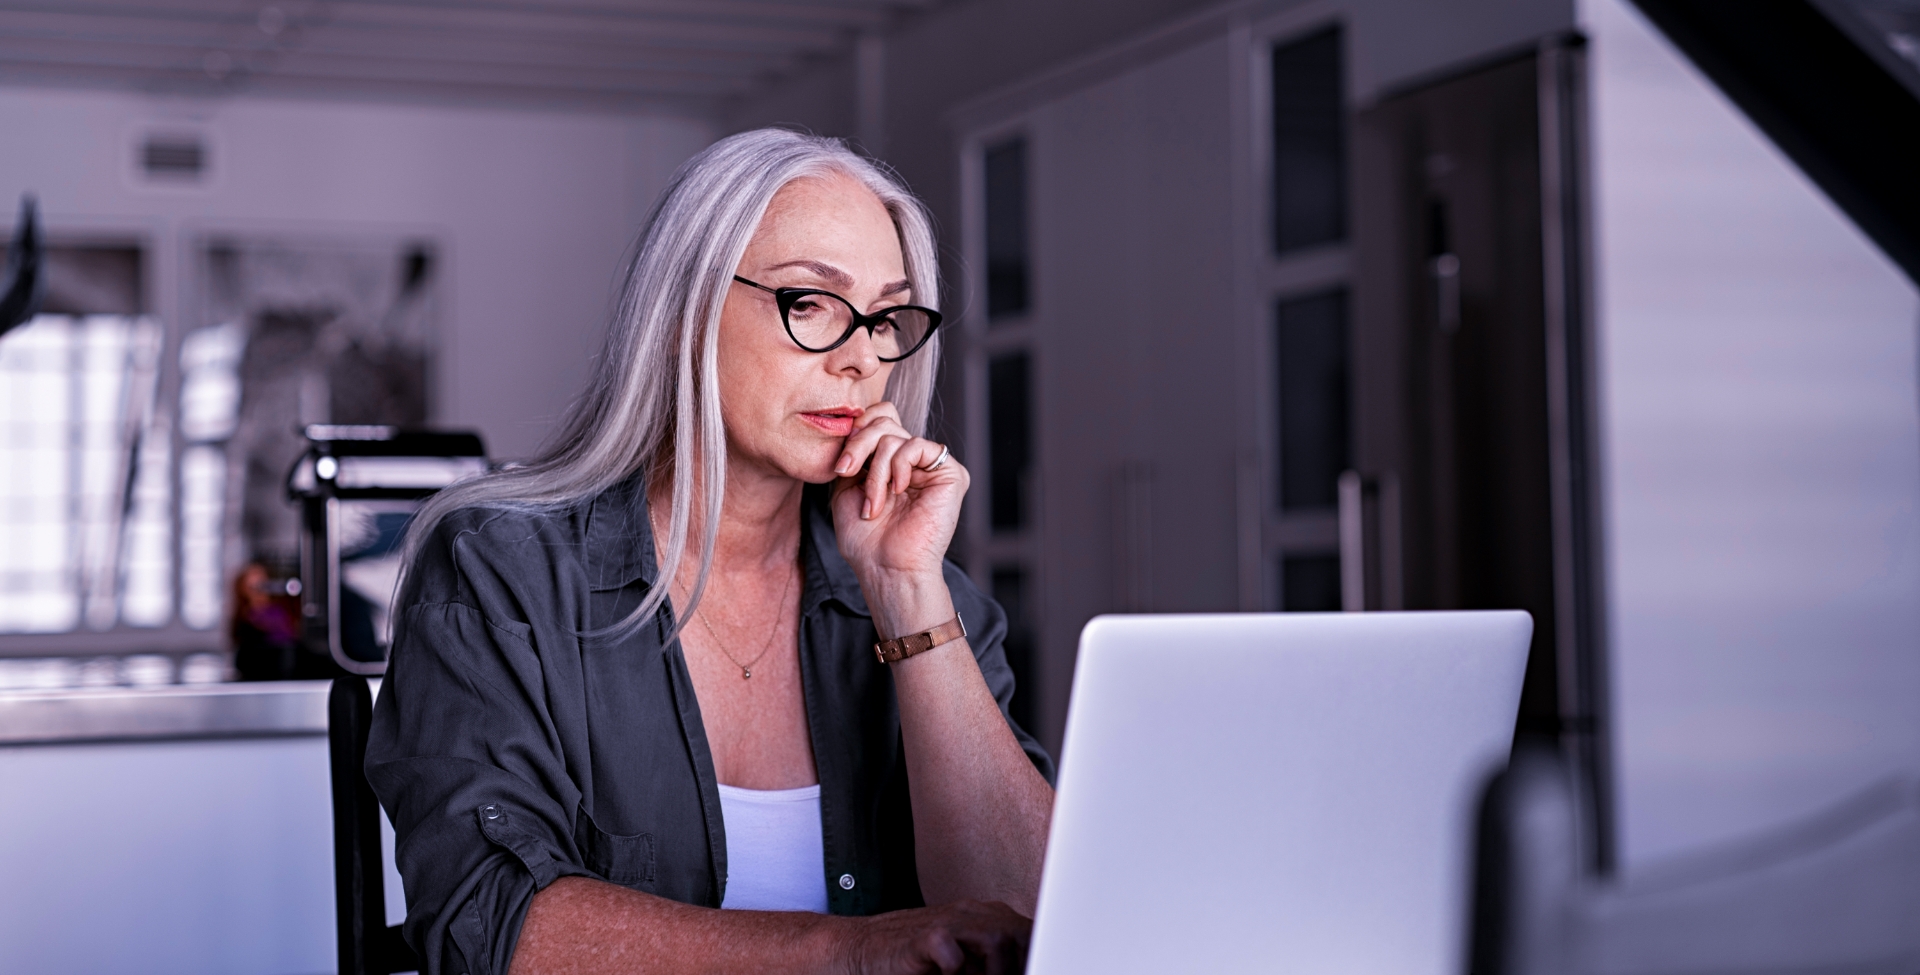 mulher madura, de óculos de grau, em frente ao computador. Ela está concentrada olhando para a tela